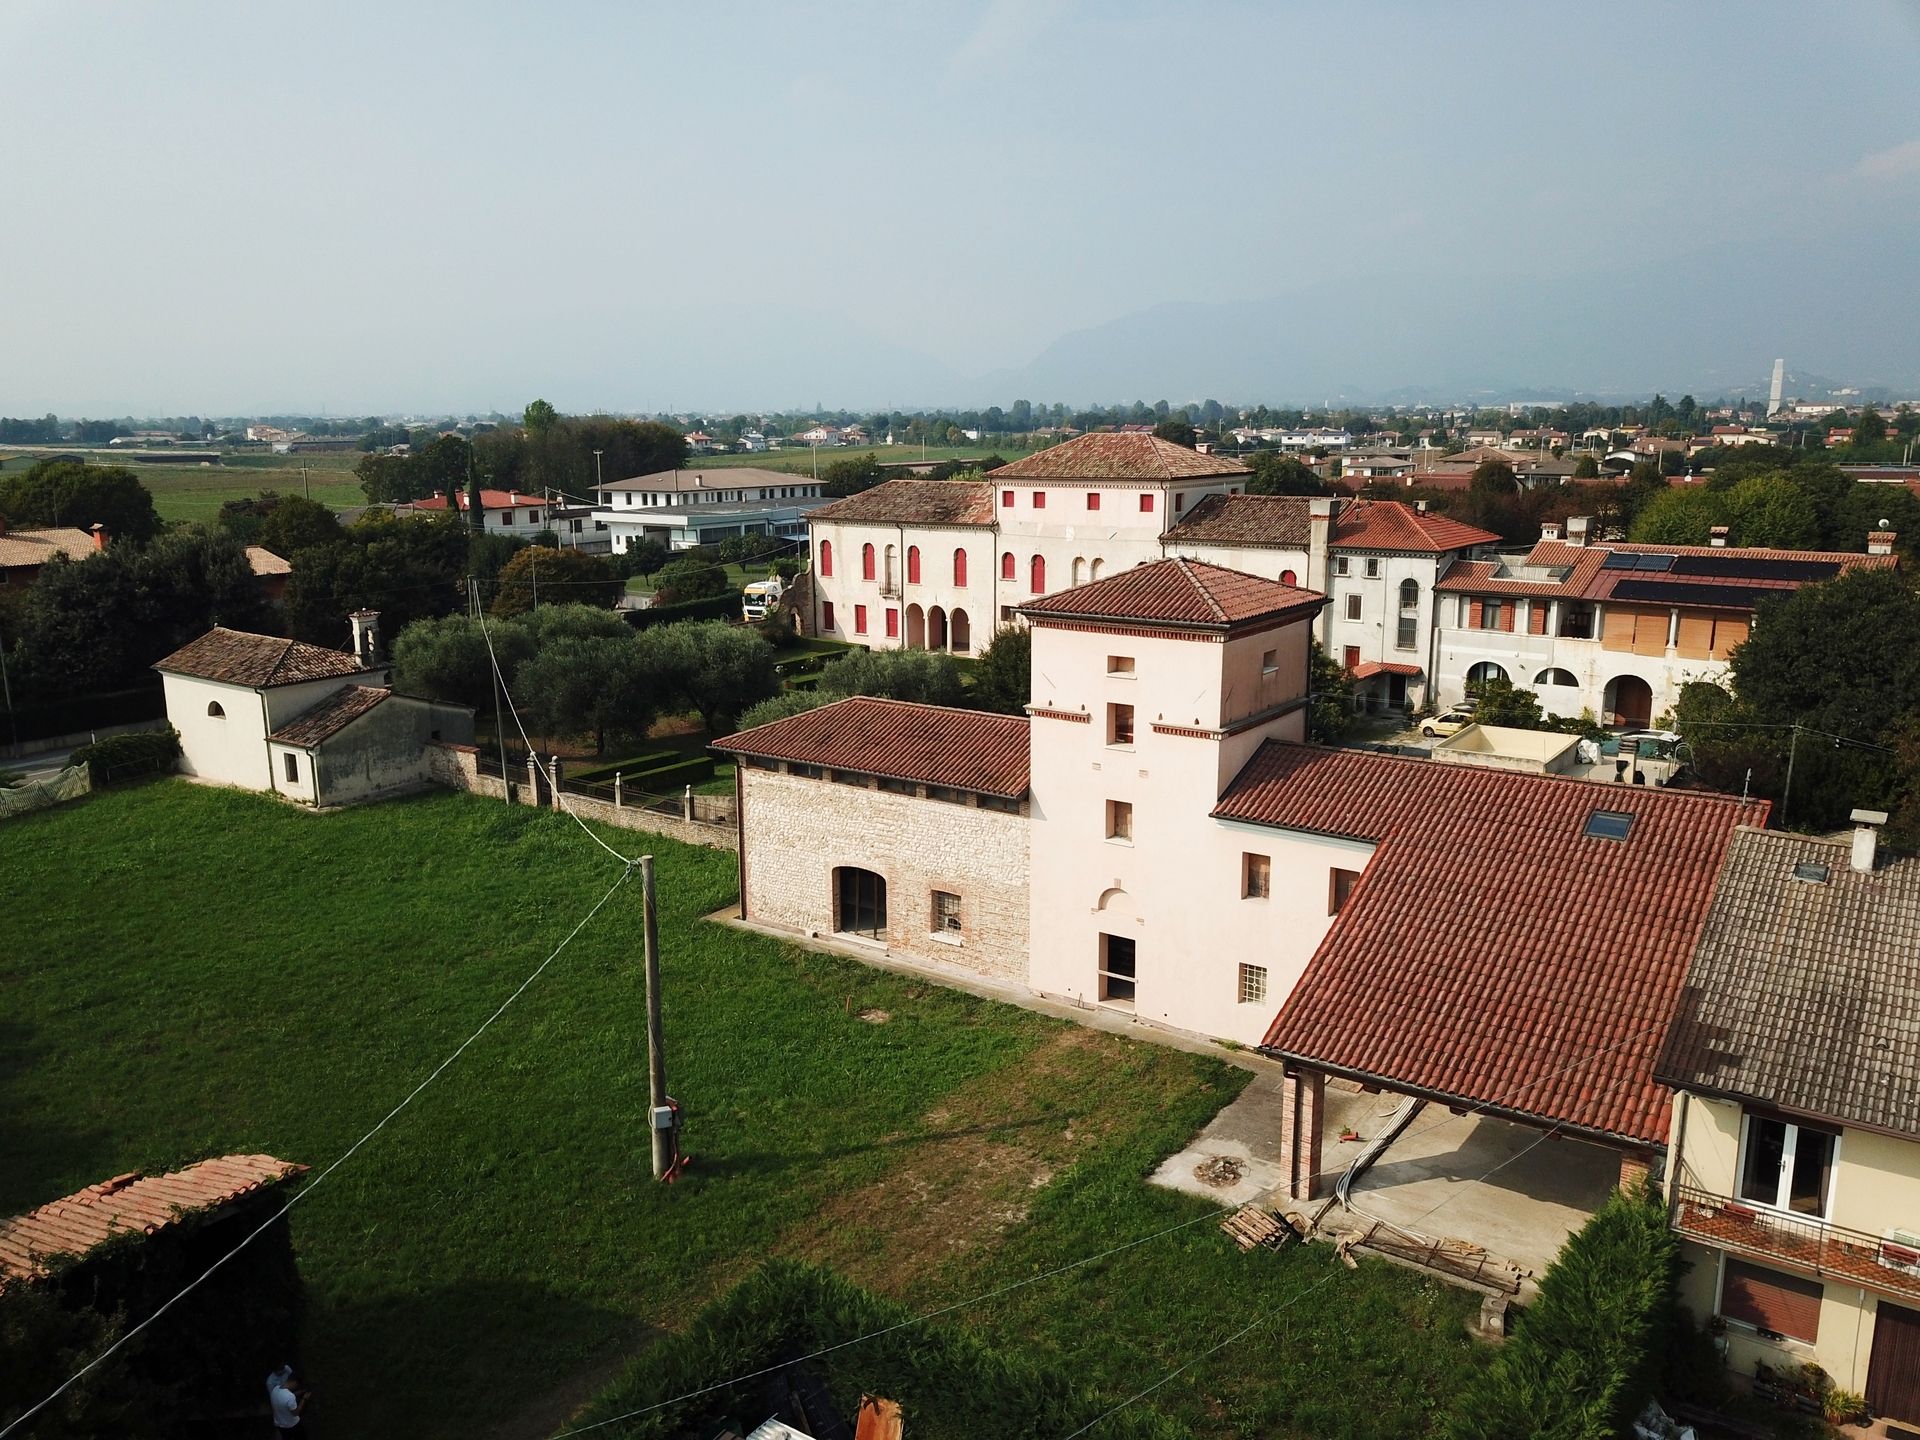 Villa singola storica a Cassola in vendita - Veneto, Vicenza | luxforsale.it